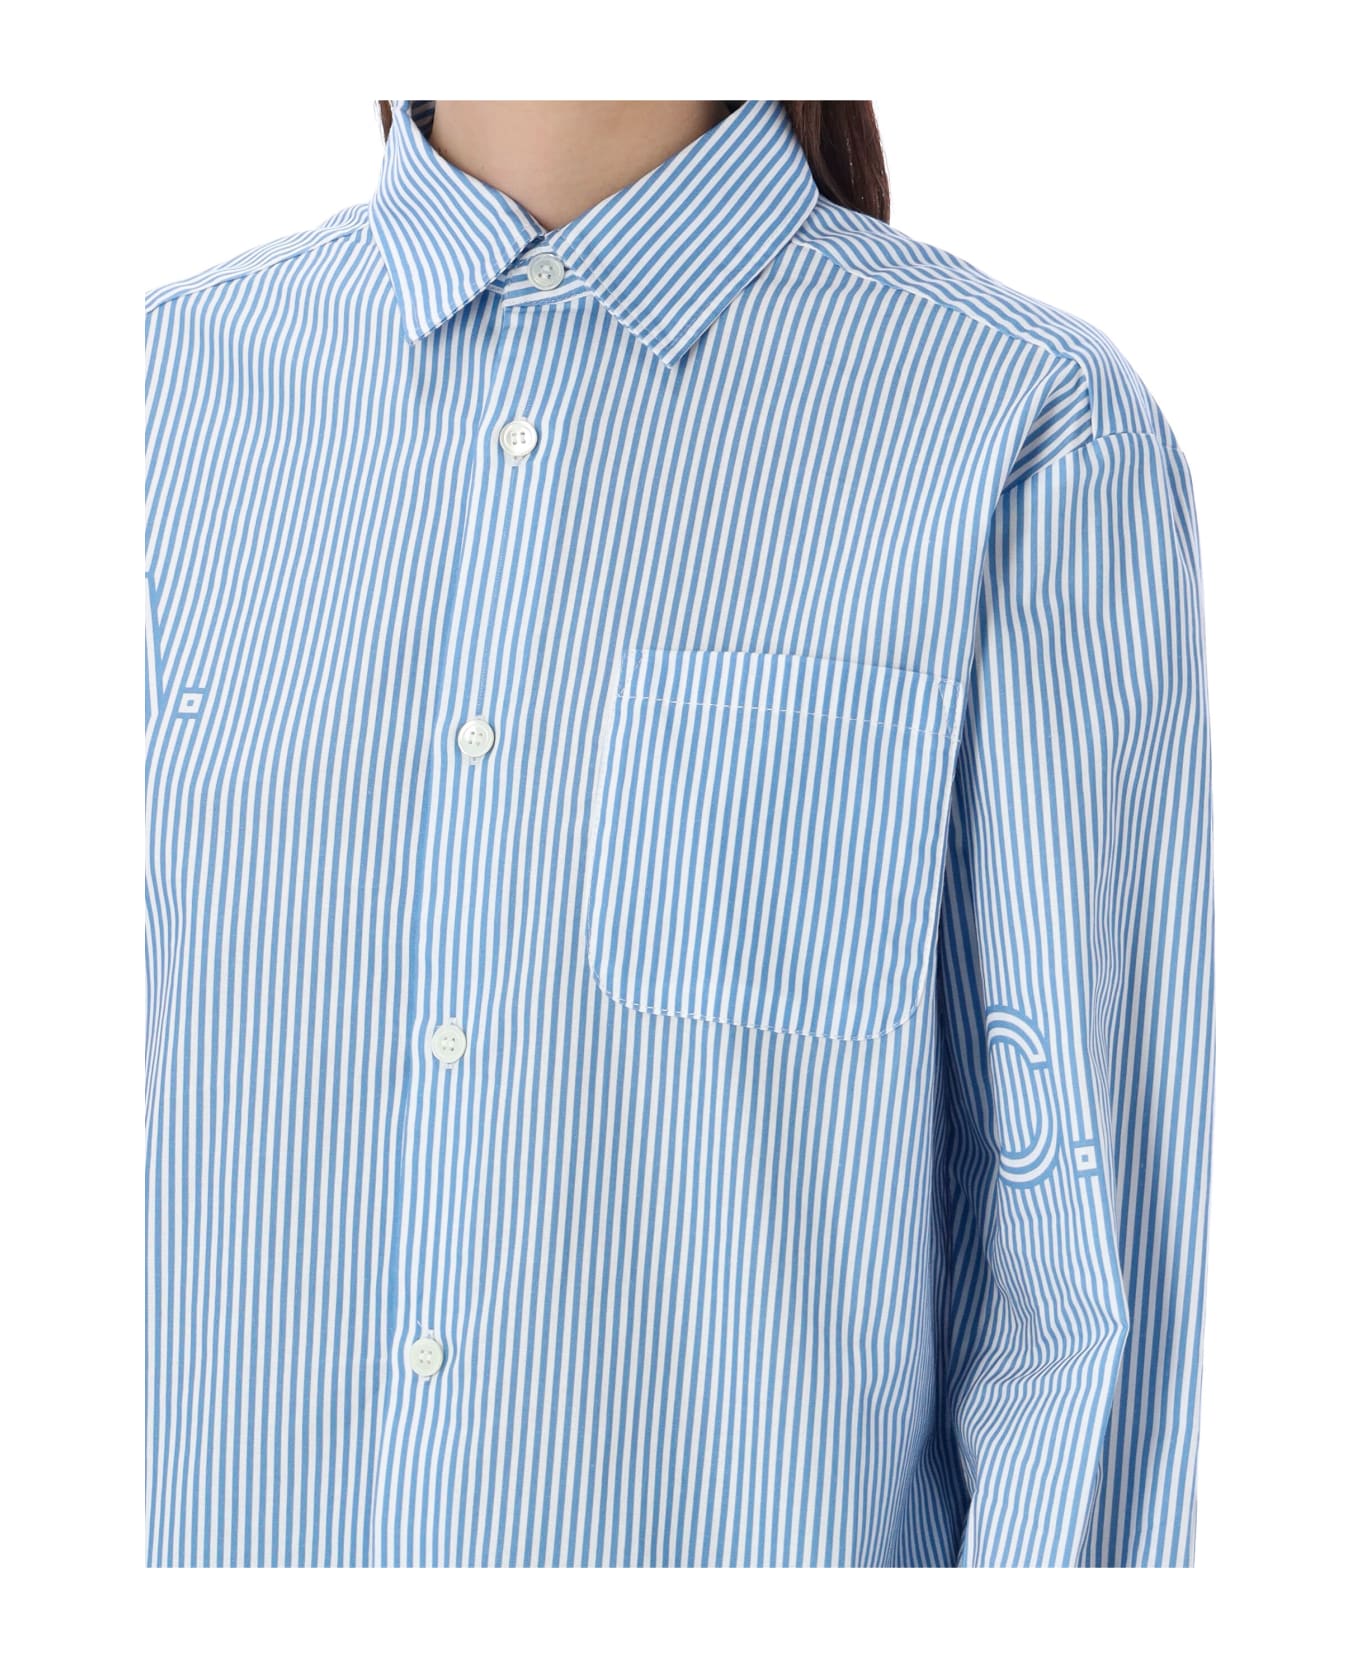 A.P.C. Sela Shirt Stripes - BLUE STRIPE